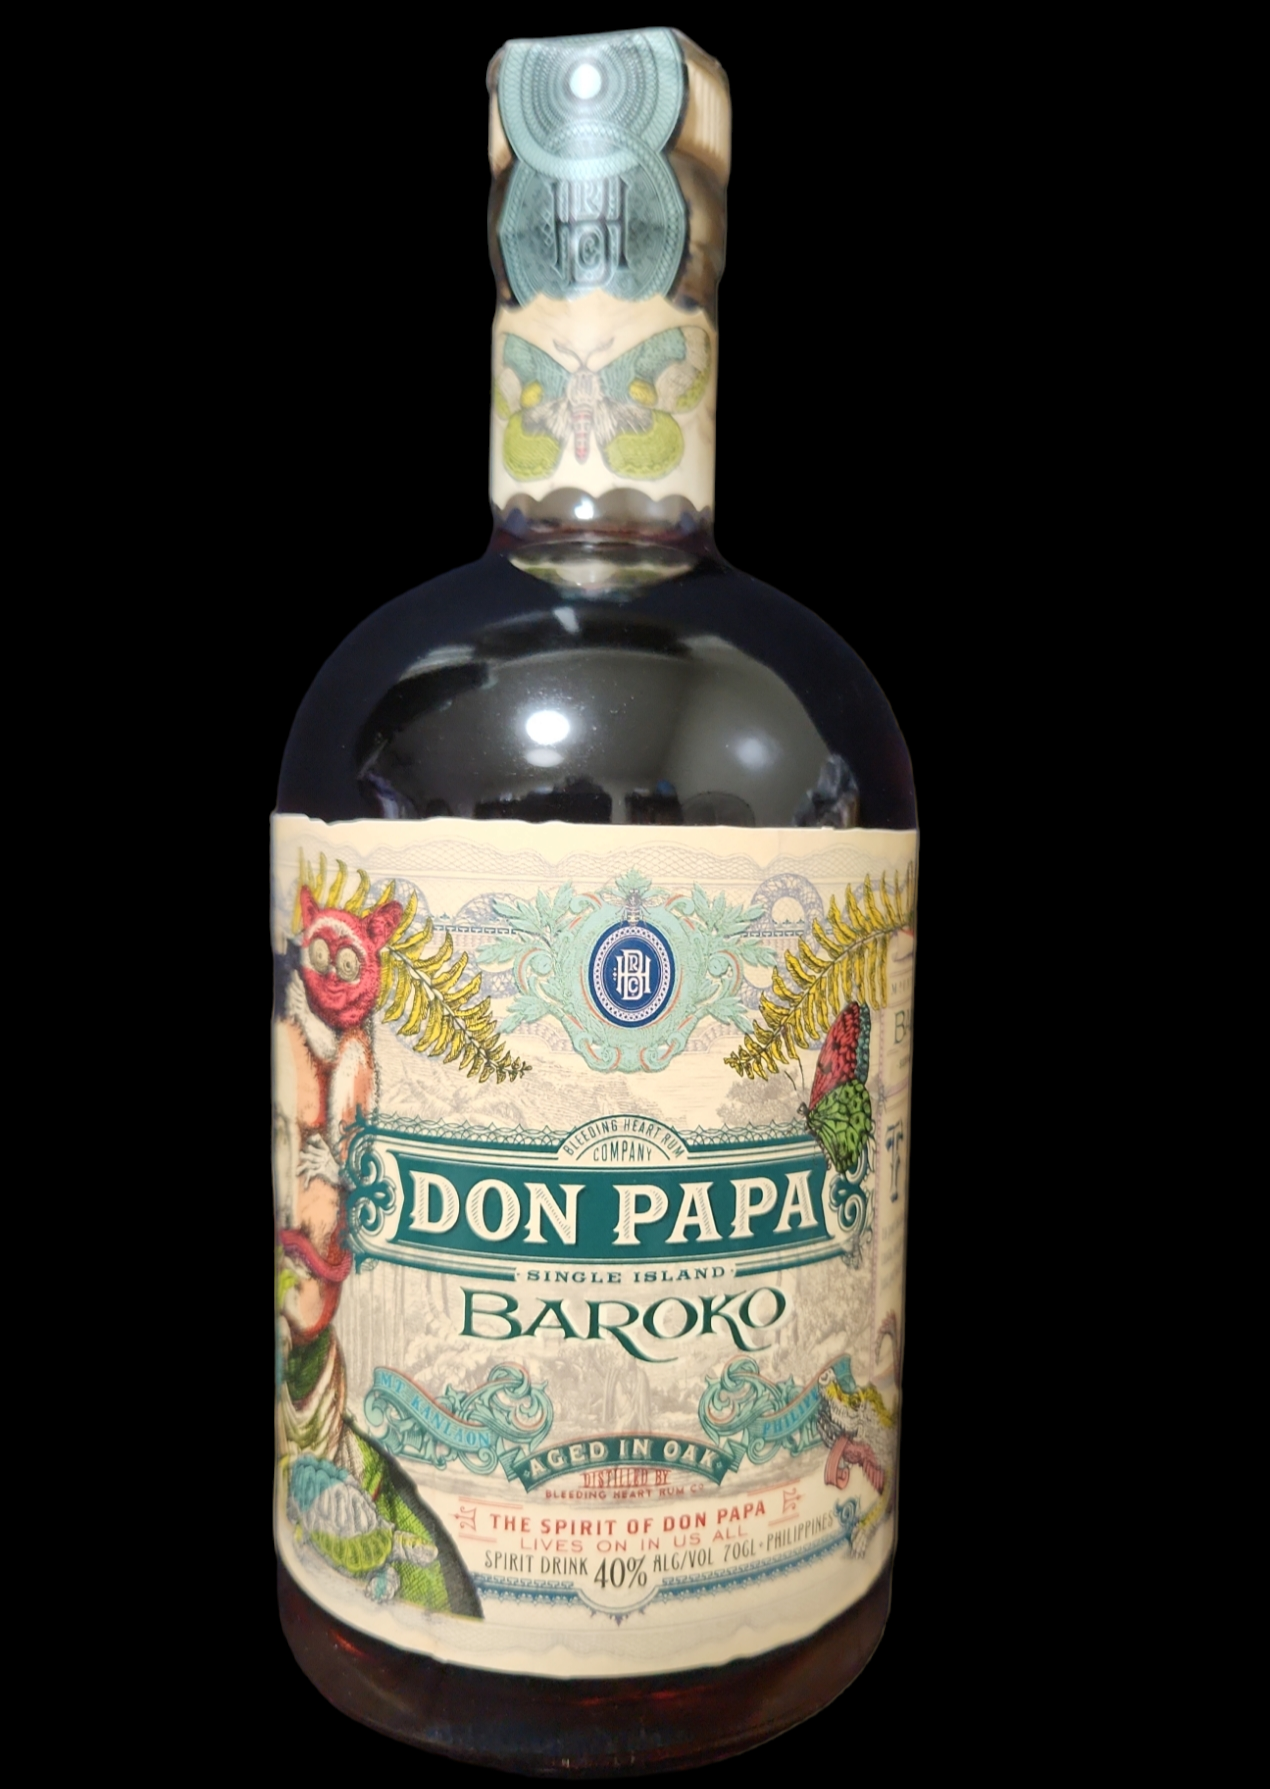 Don Papa Baroko Rum - Philippines RumX - RX605